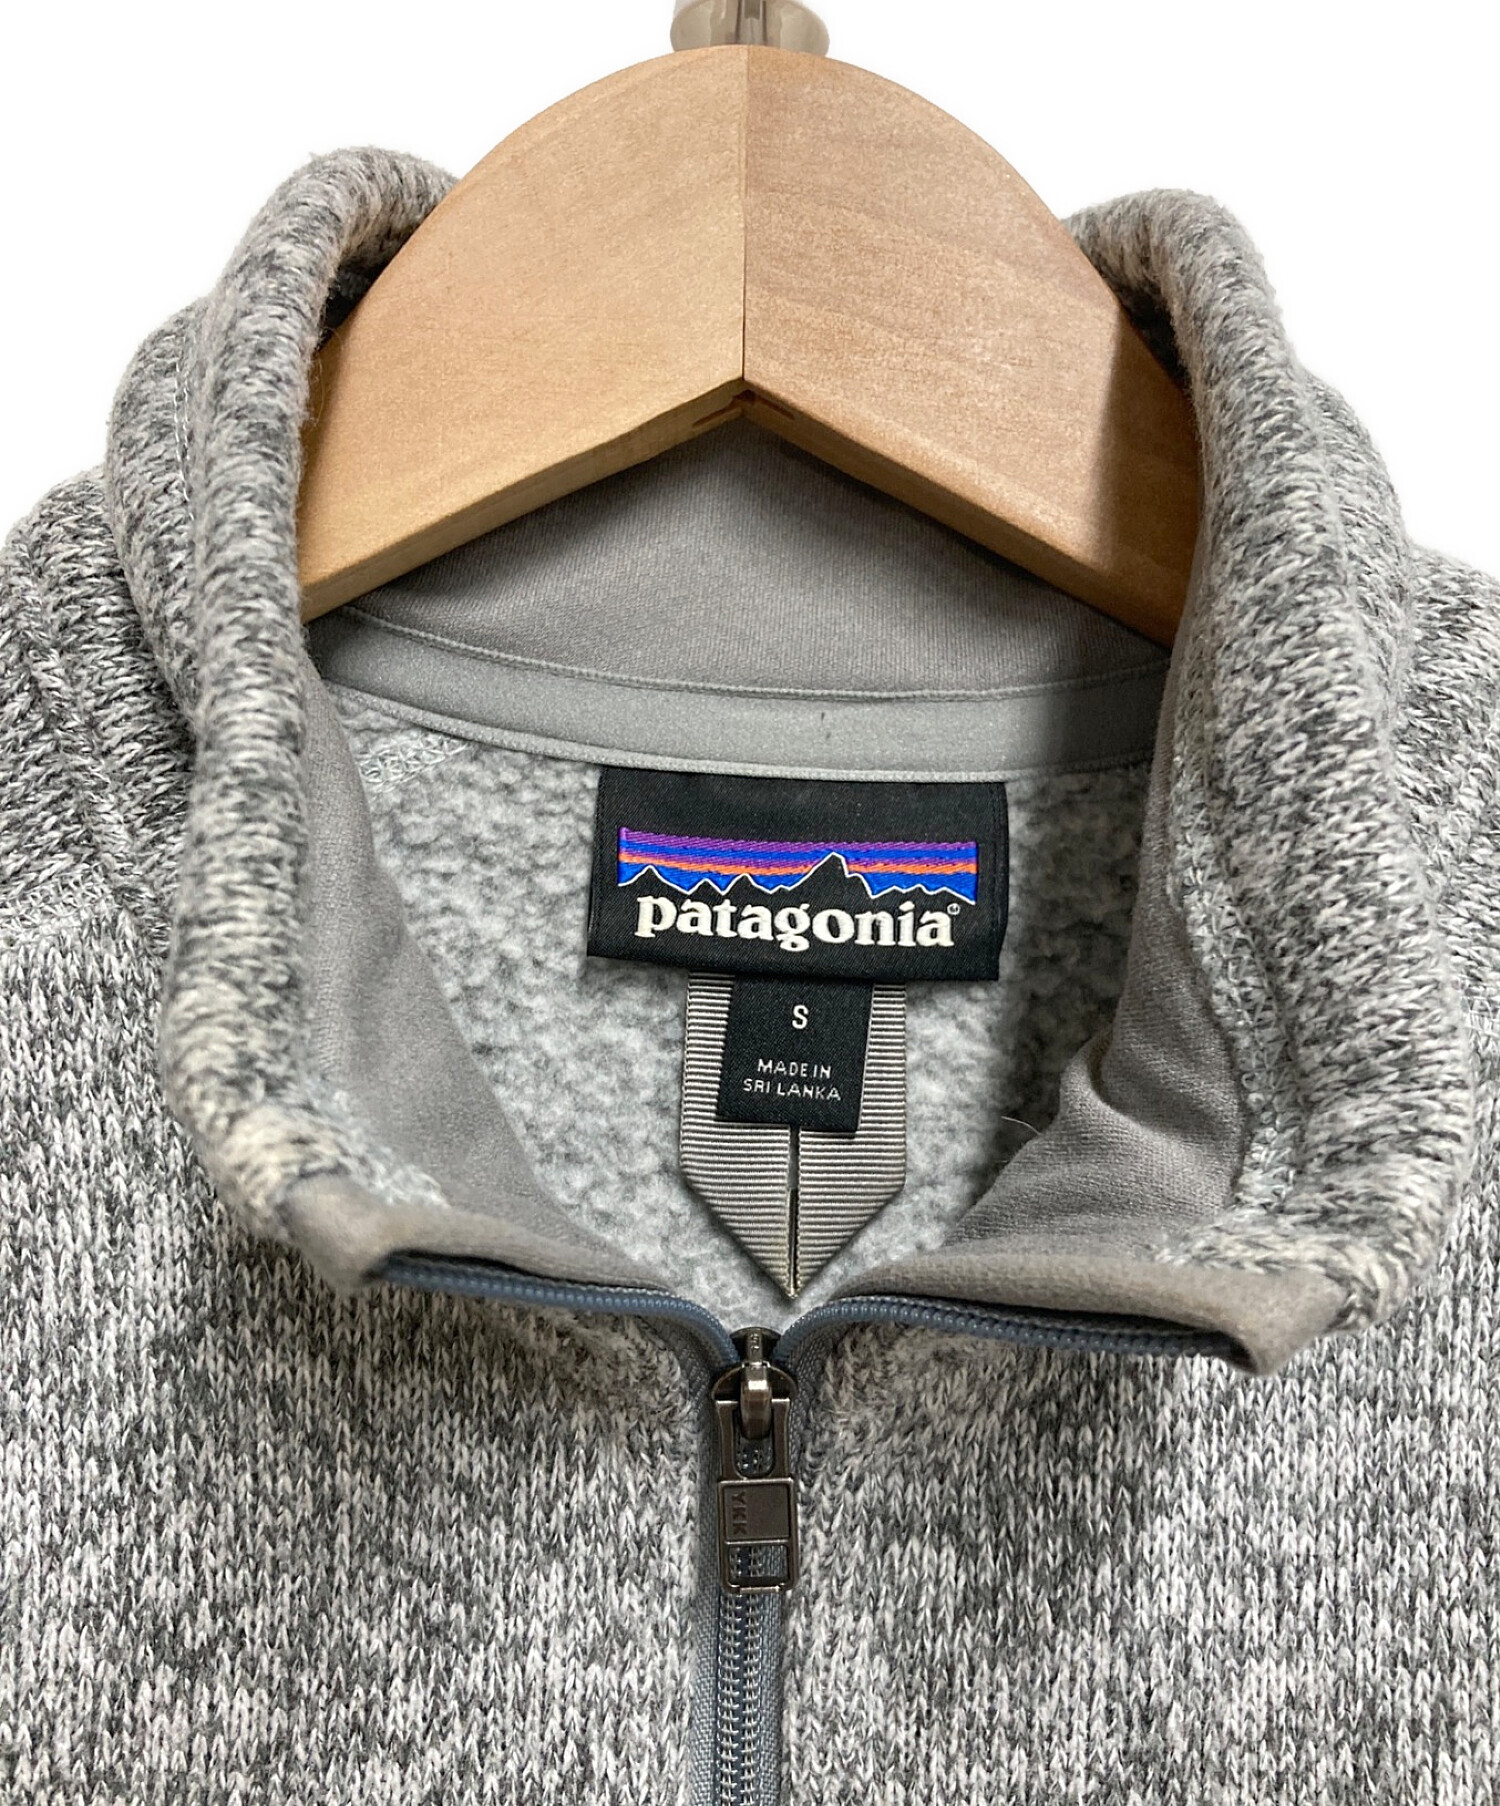 Patagonia (パタゴニア) ジップアップジャケット グレー サイズ:Sサイズ